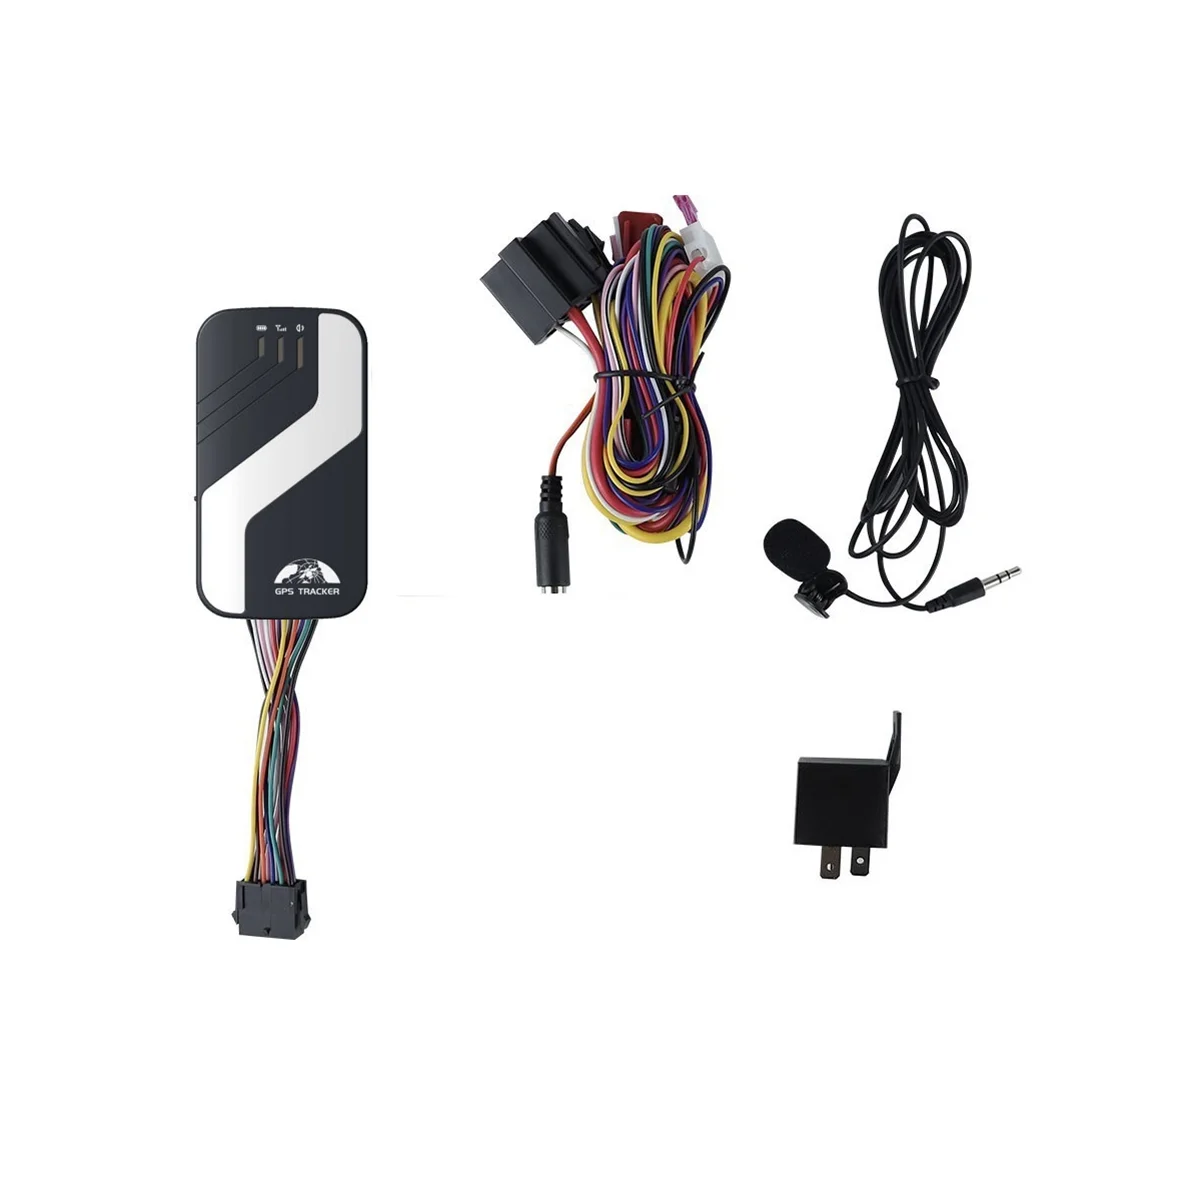 Rastreador GPS para coche 4G LTE, dispositivo de seguimiento de vehículos, Monitor de voz, corte de combustible, alarma GPS para coche ACC, alarma de apertura de puerta (GPS403A)